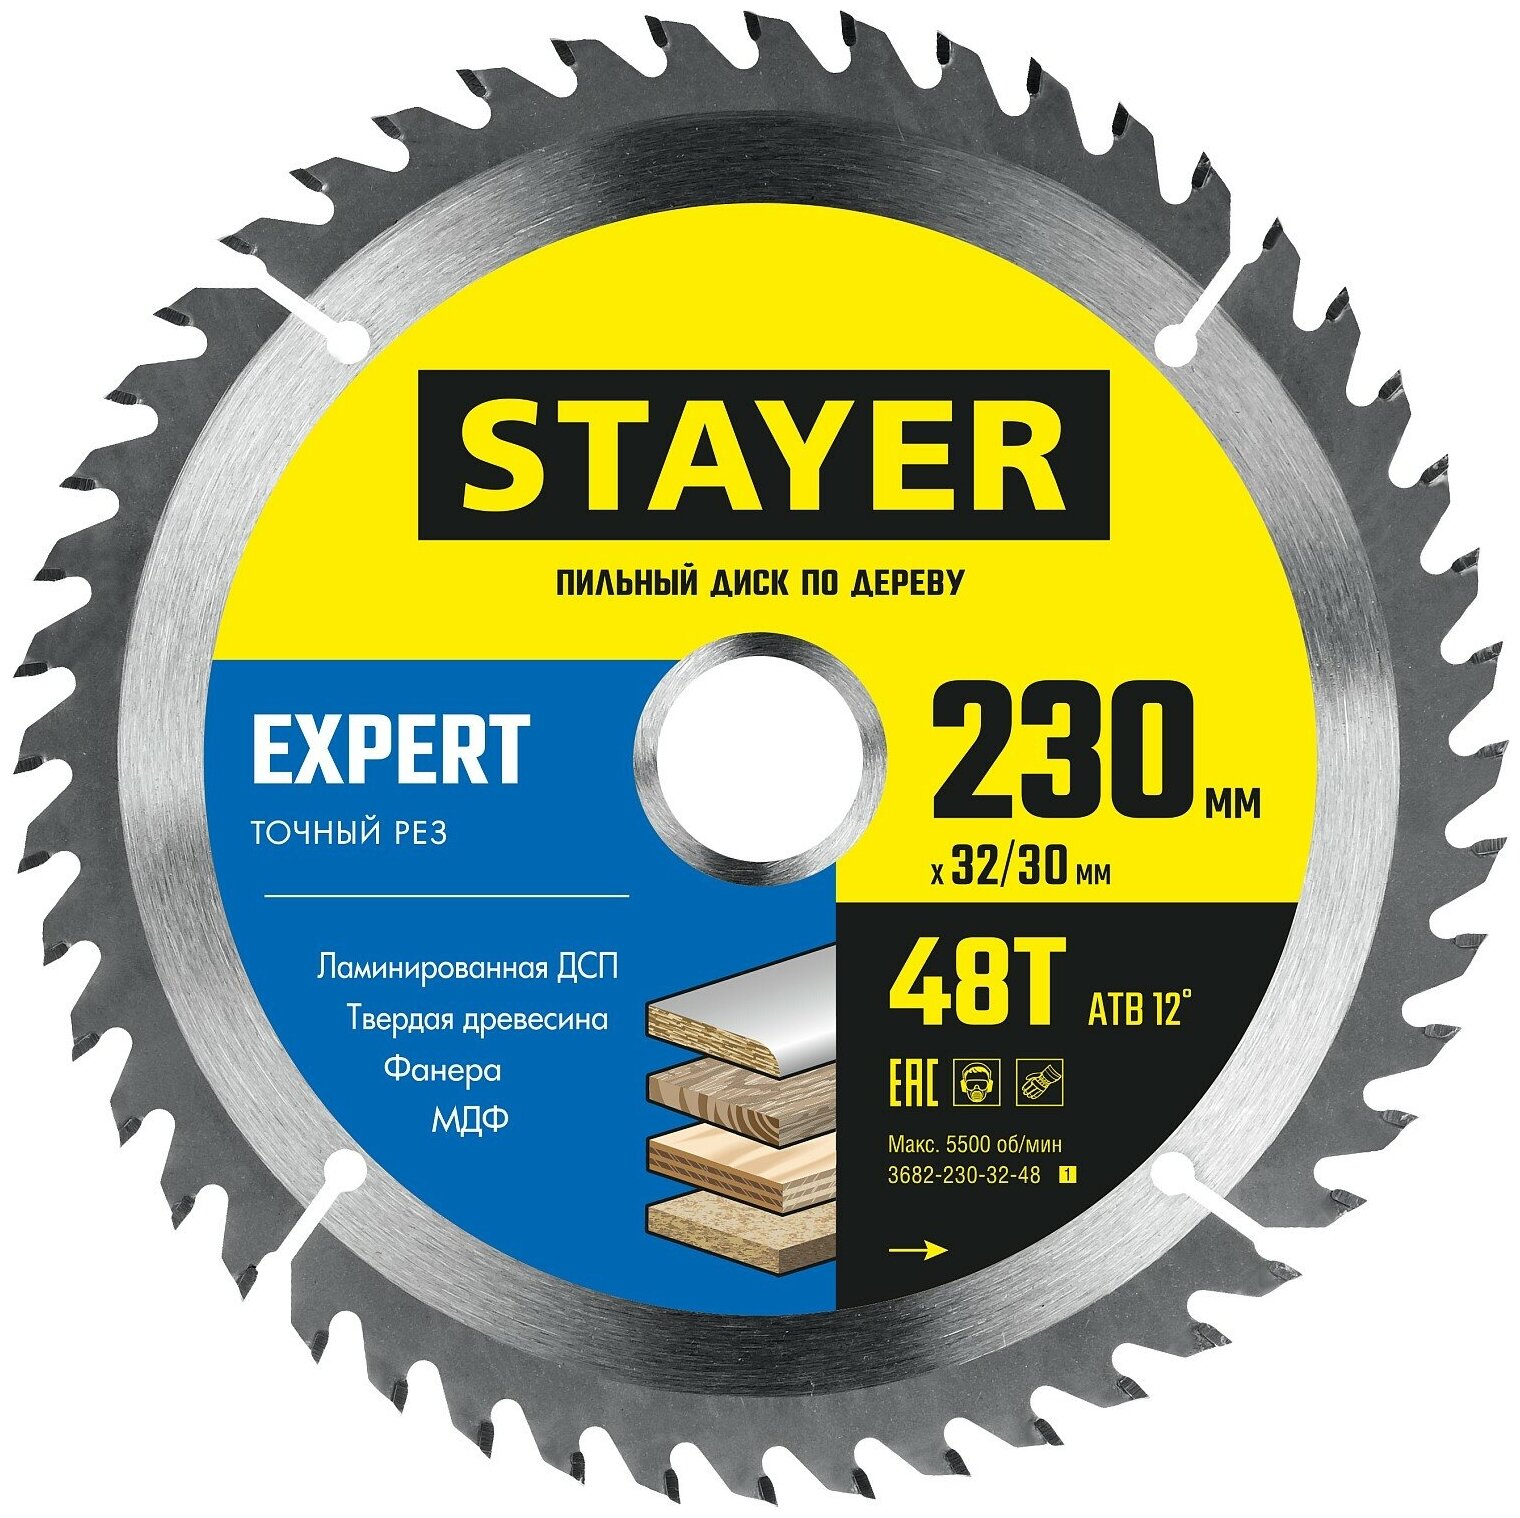 STAYER EXPERT 230 x 32/30мм 48Т, диск пильный по дереву, точный рез, 3682-230-32-48